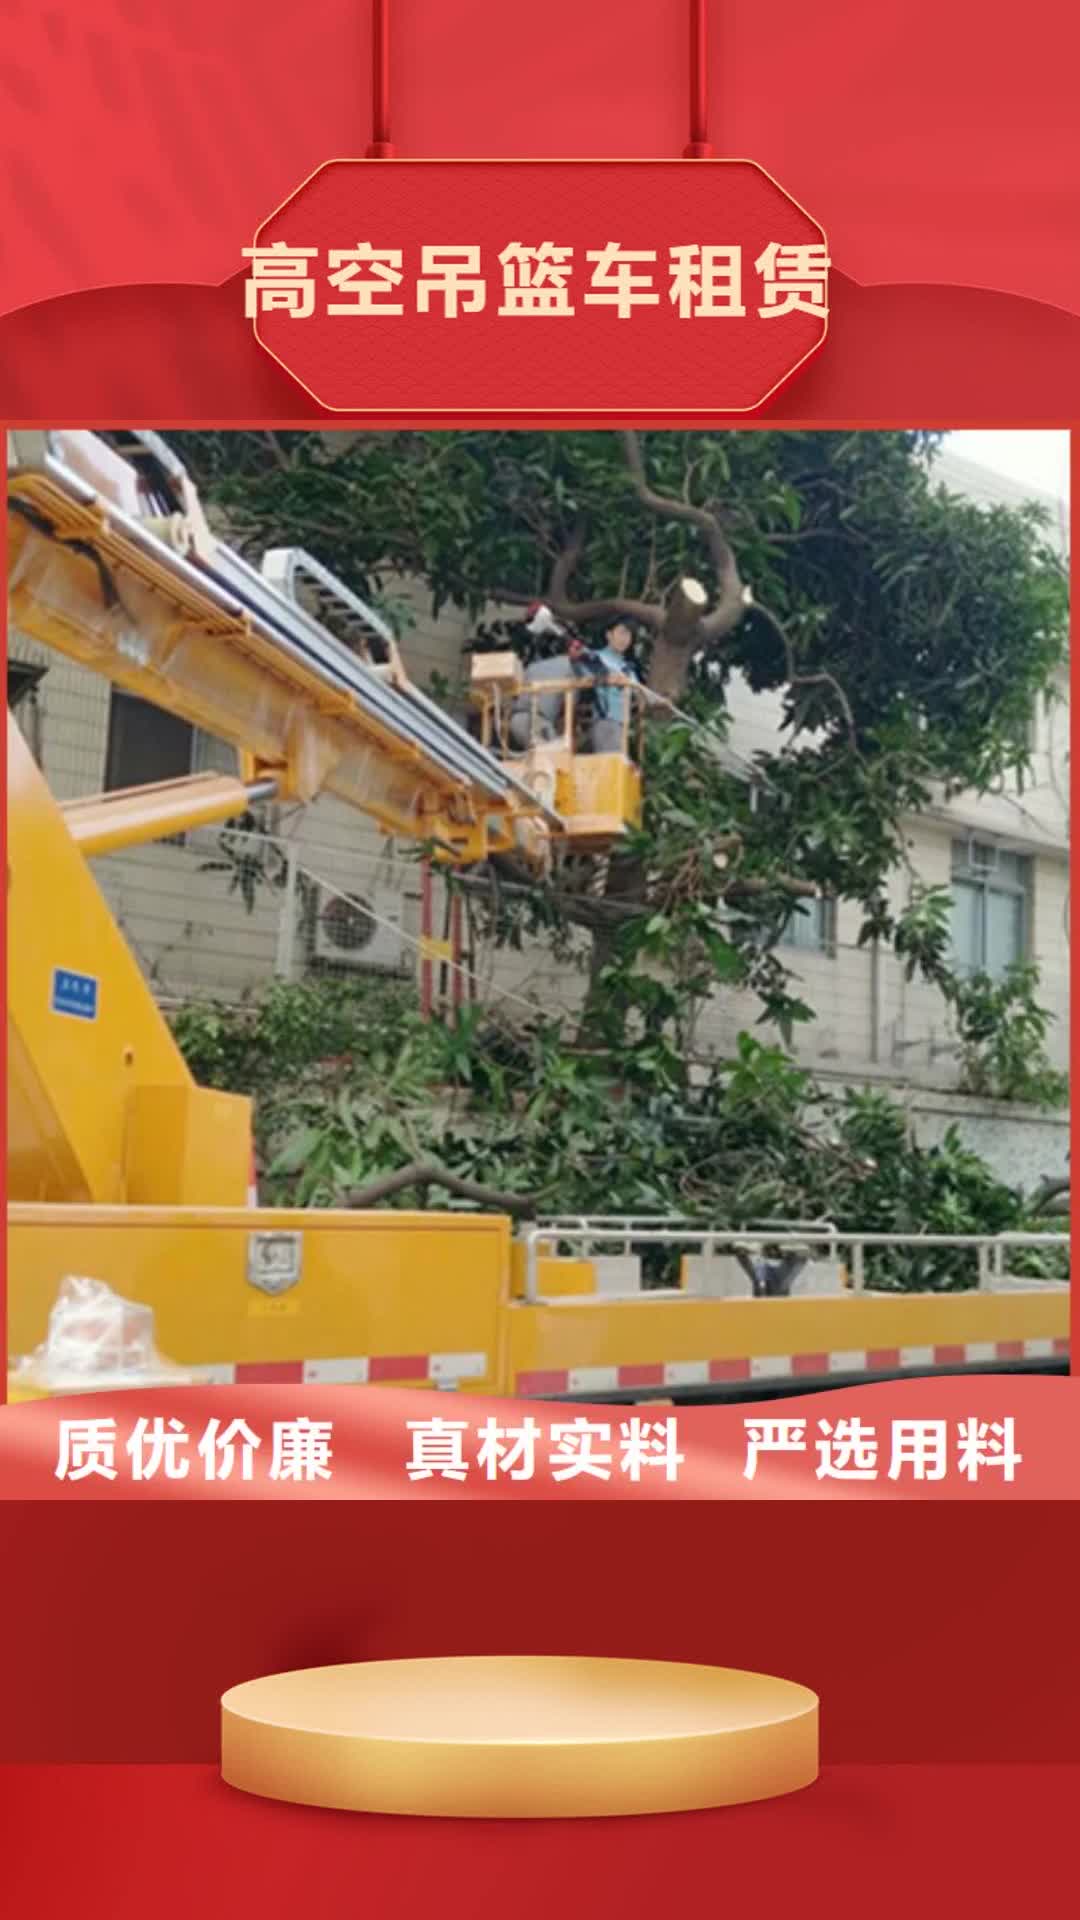 香港 高空吊篮车租赁精致工艺